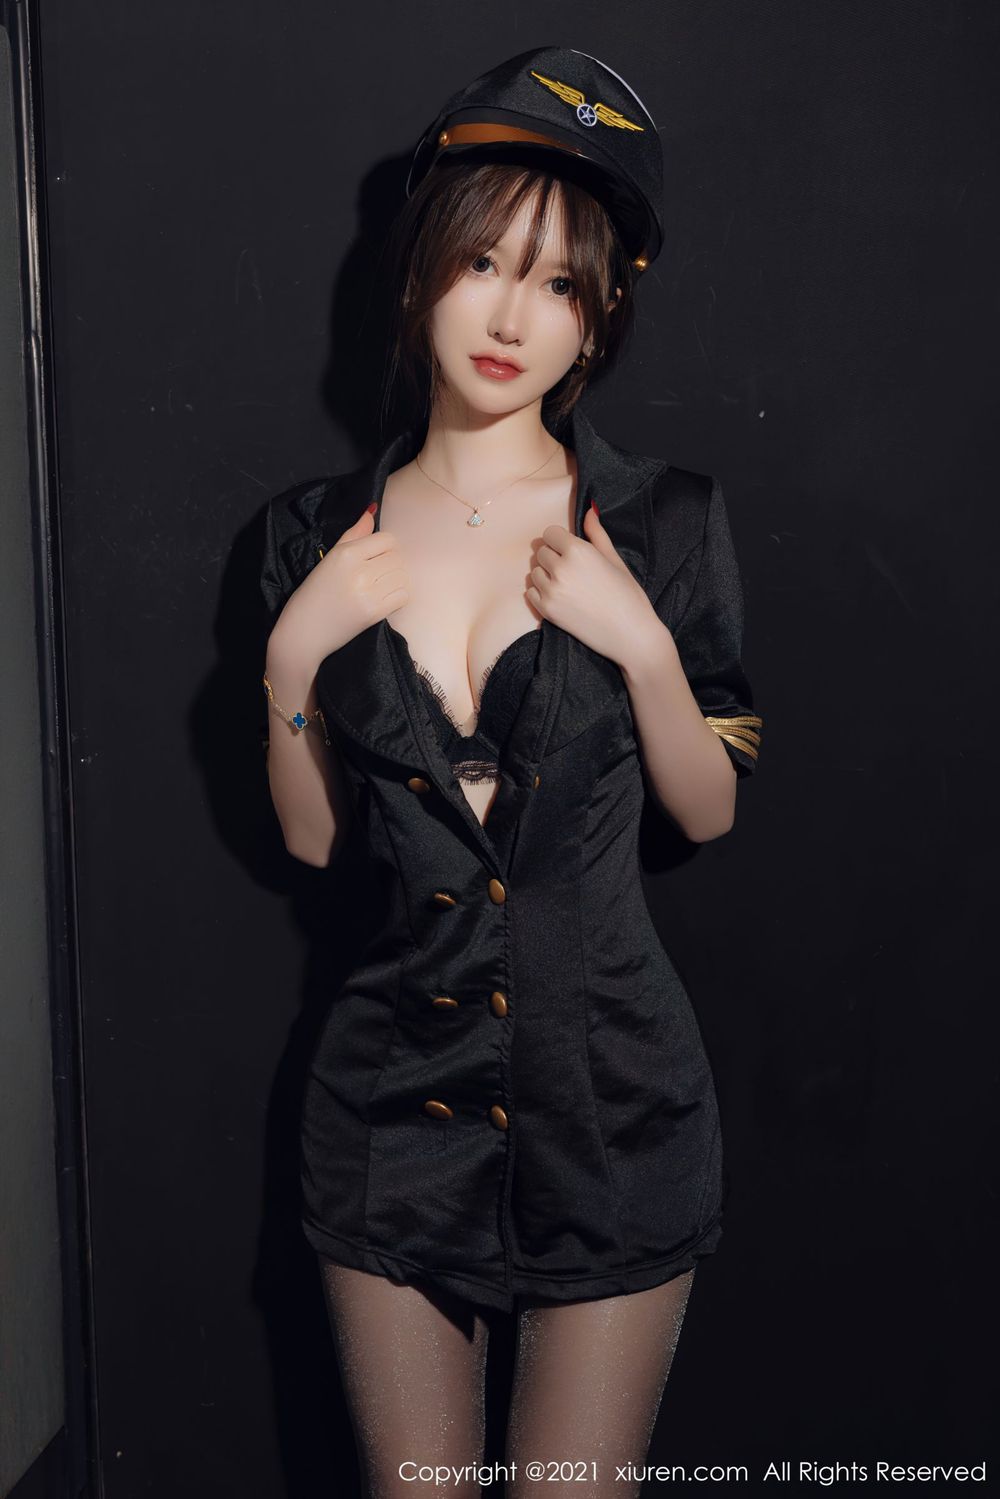 美女模特美桃酱 - 空军制服+黑丝系列性感写真